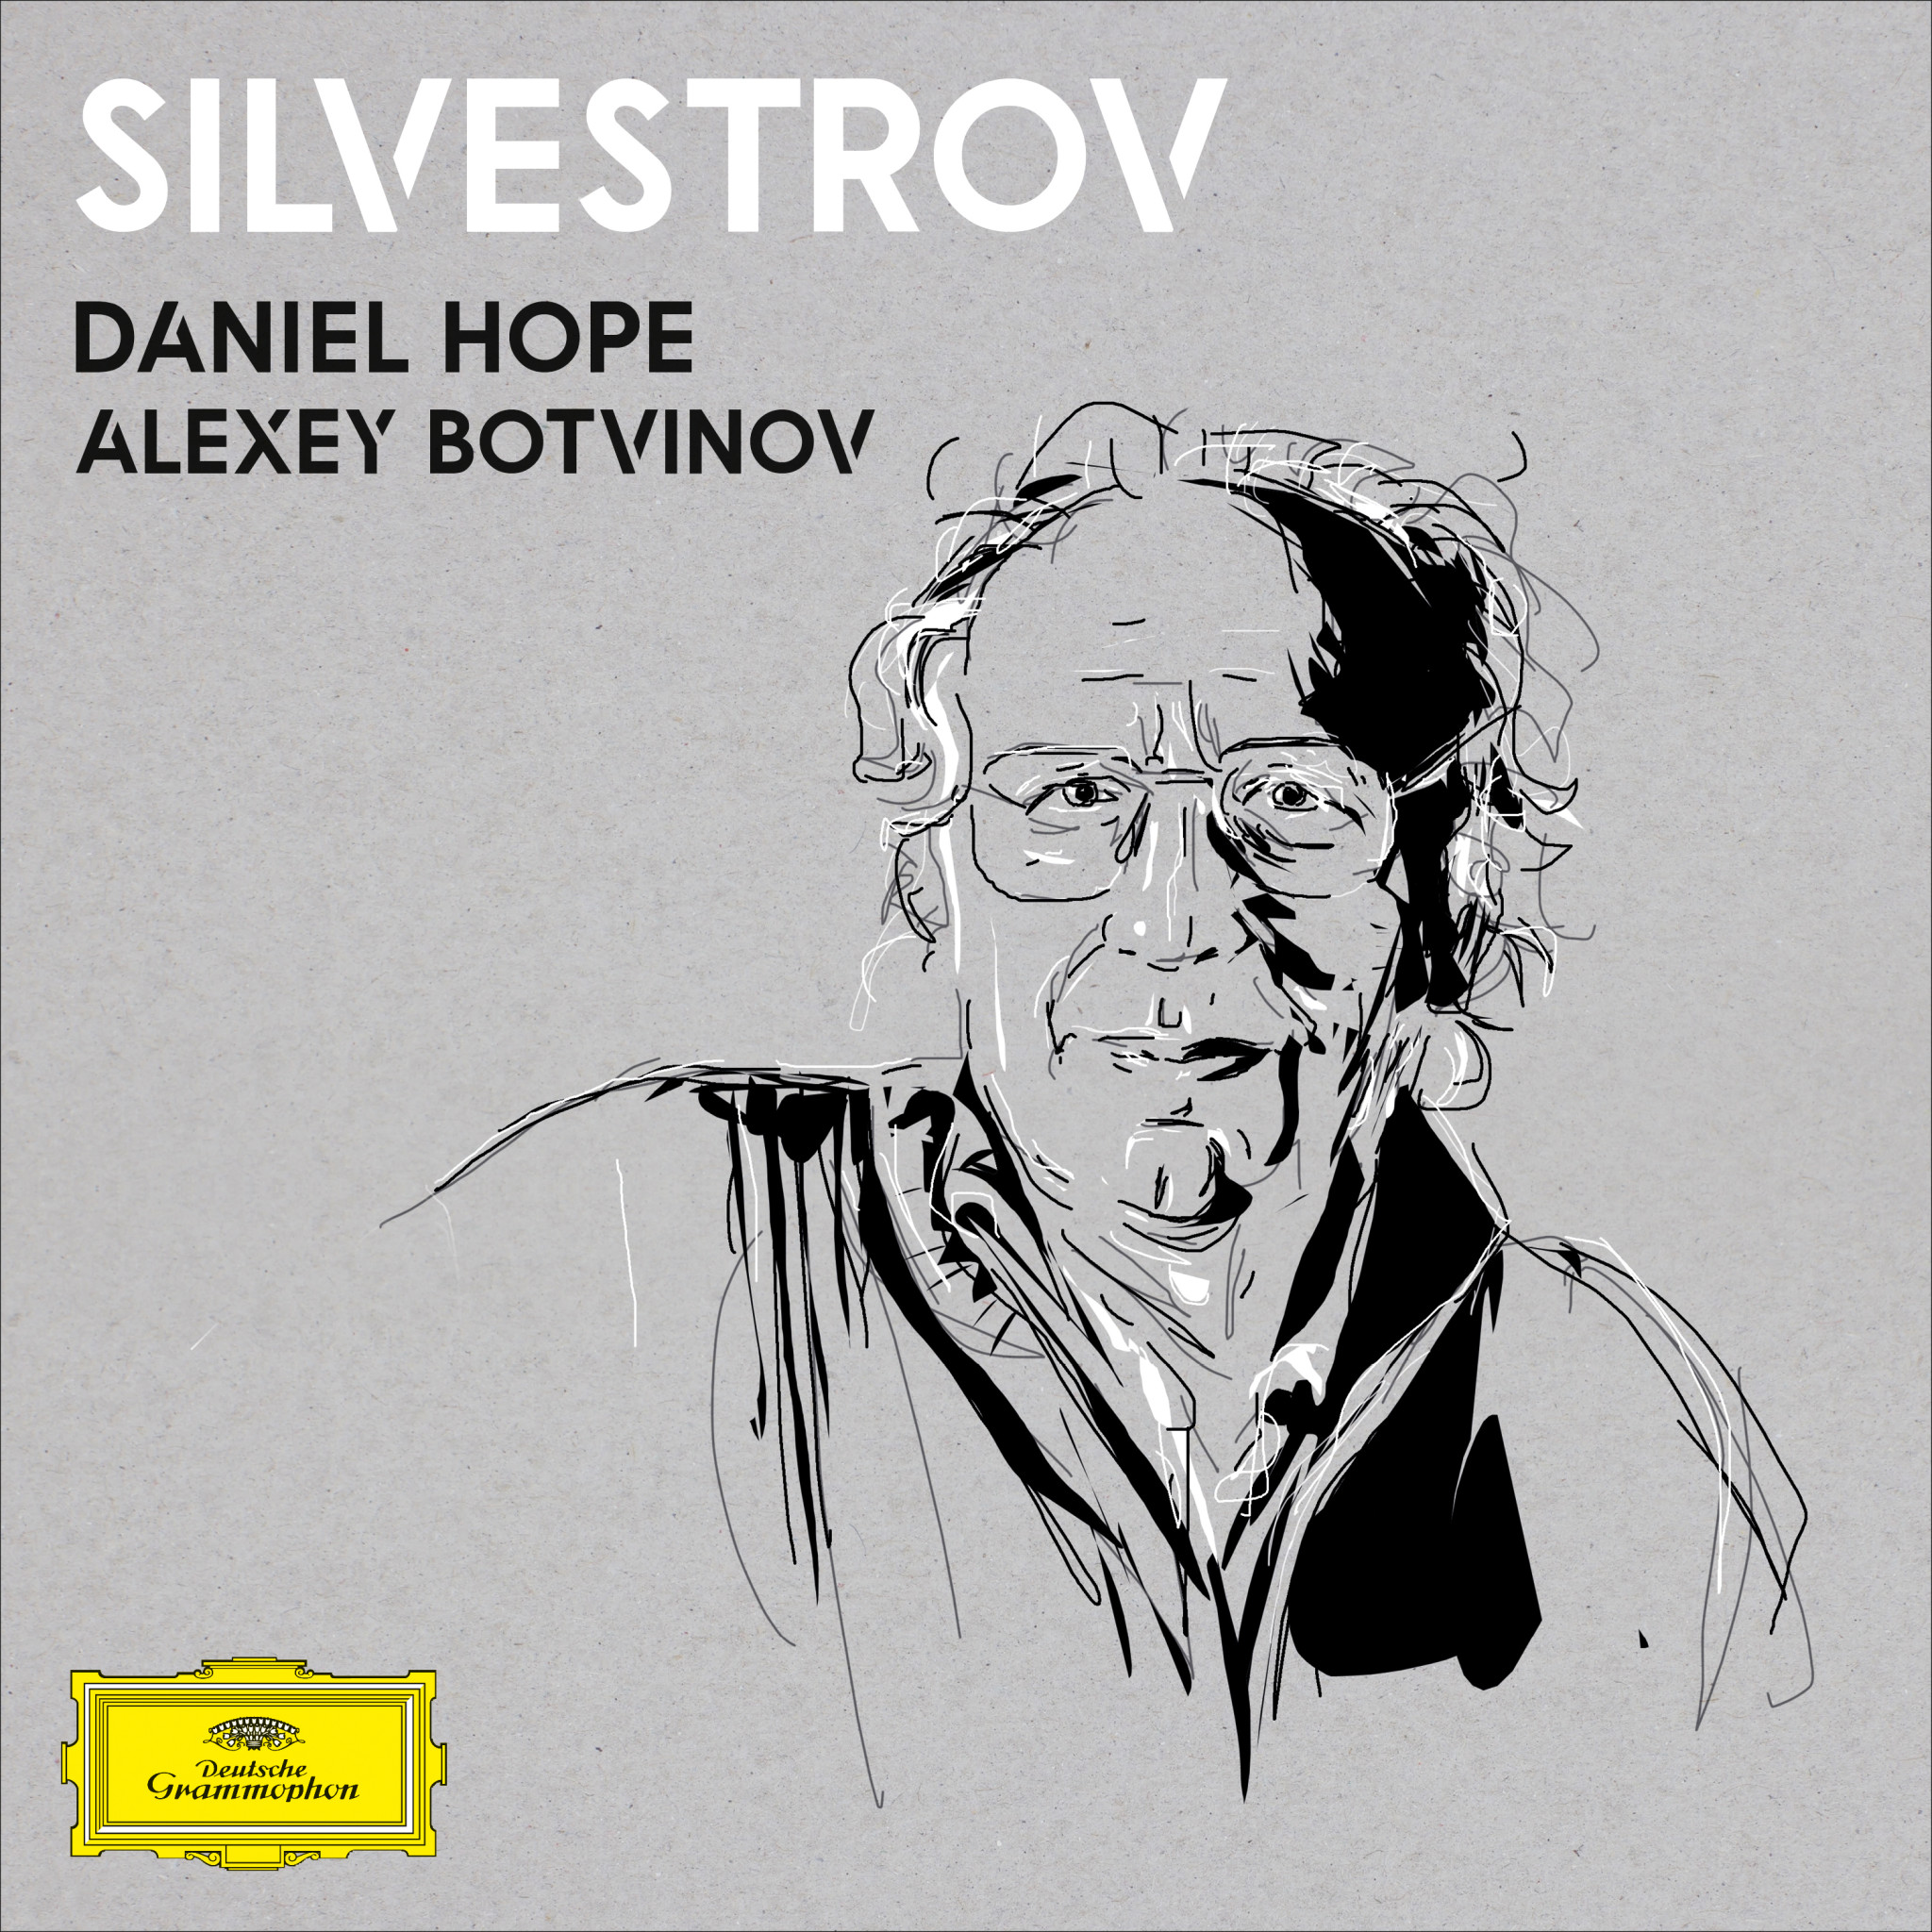 Daniel Hope - Silvestrov Cover